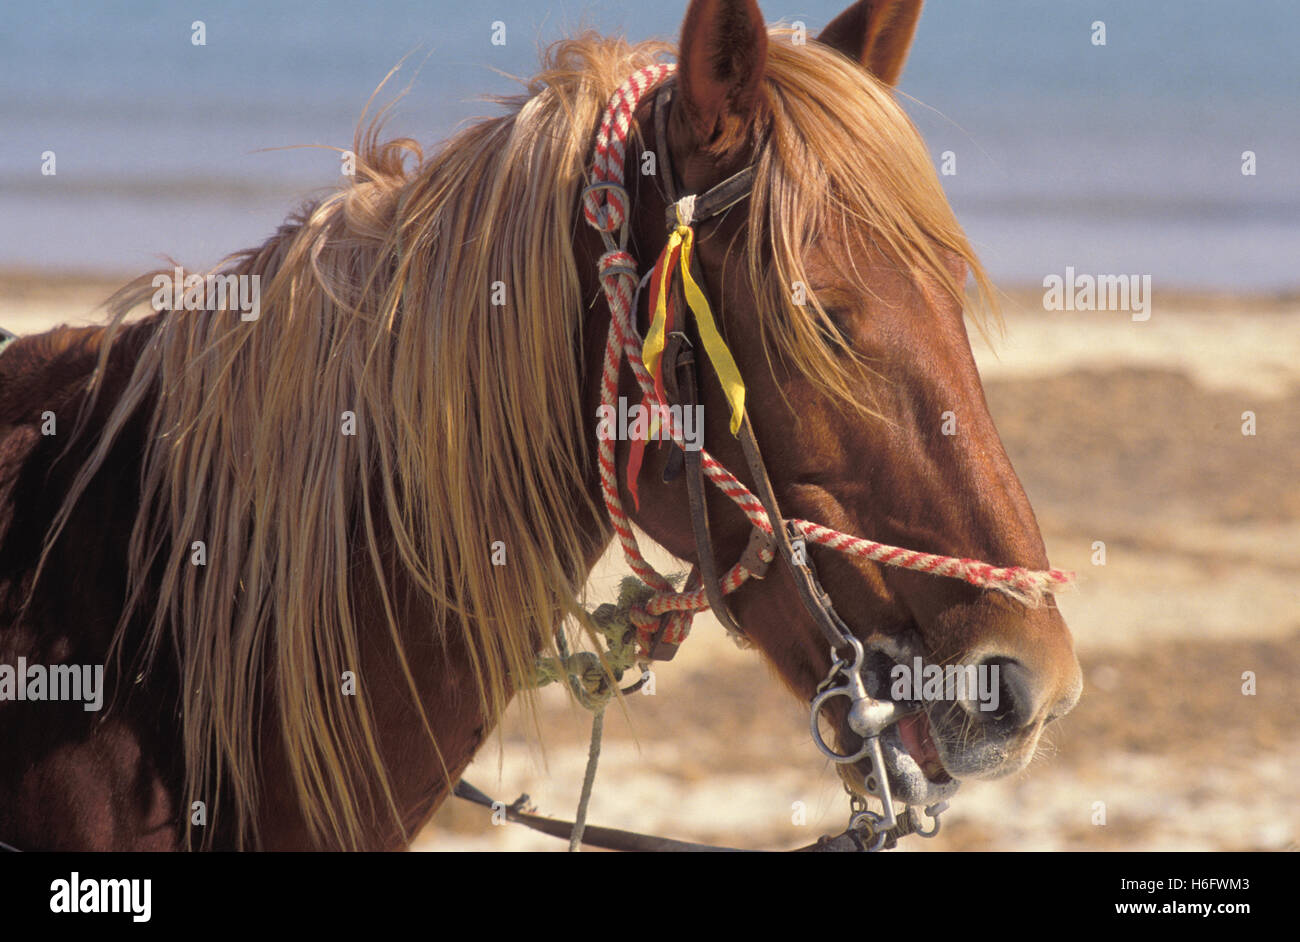 Tunisia, Jarbah Island, horse at the beach Sidi Mahrez. Stock Photo